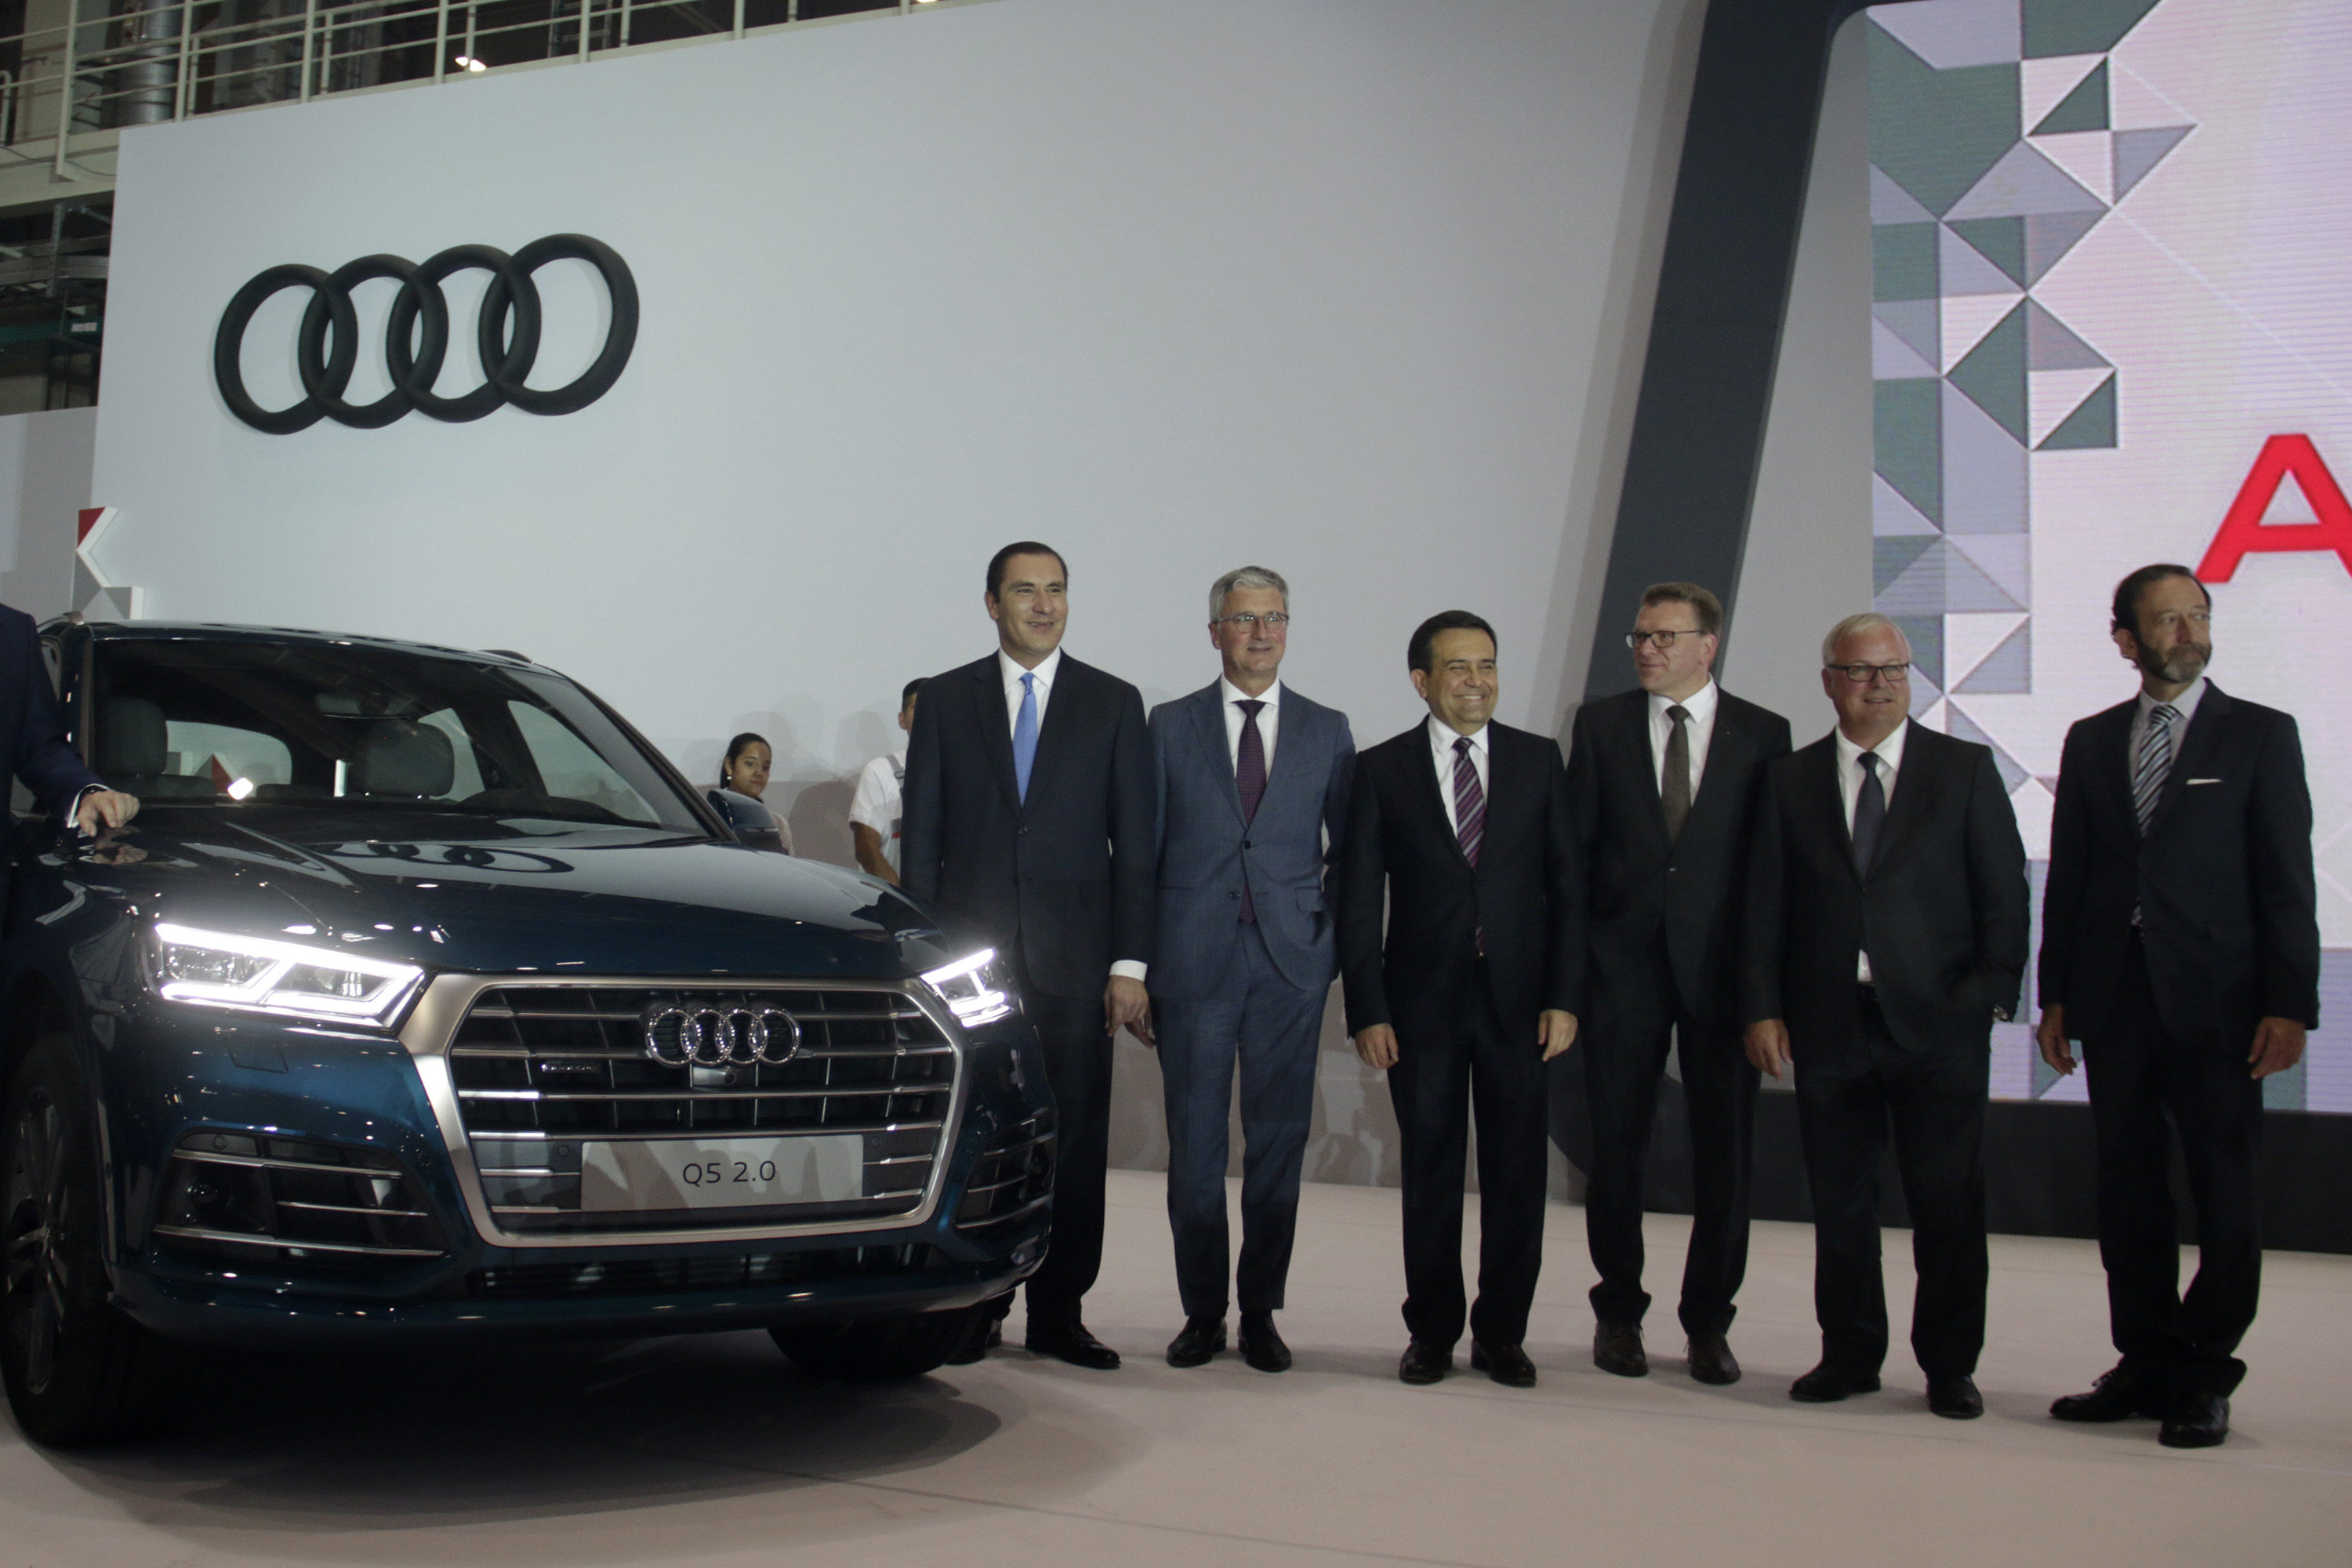 México, nación en auge para sector automotriz, dice CEO de Audi en inauguración